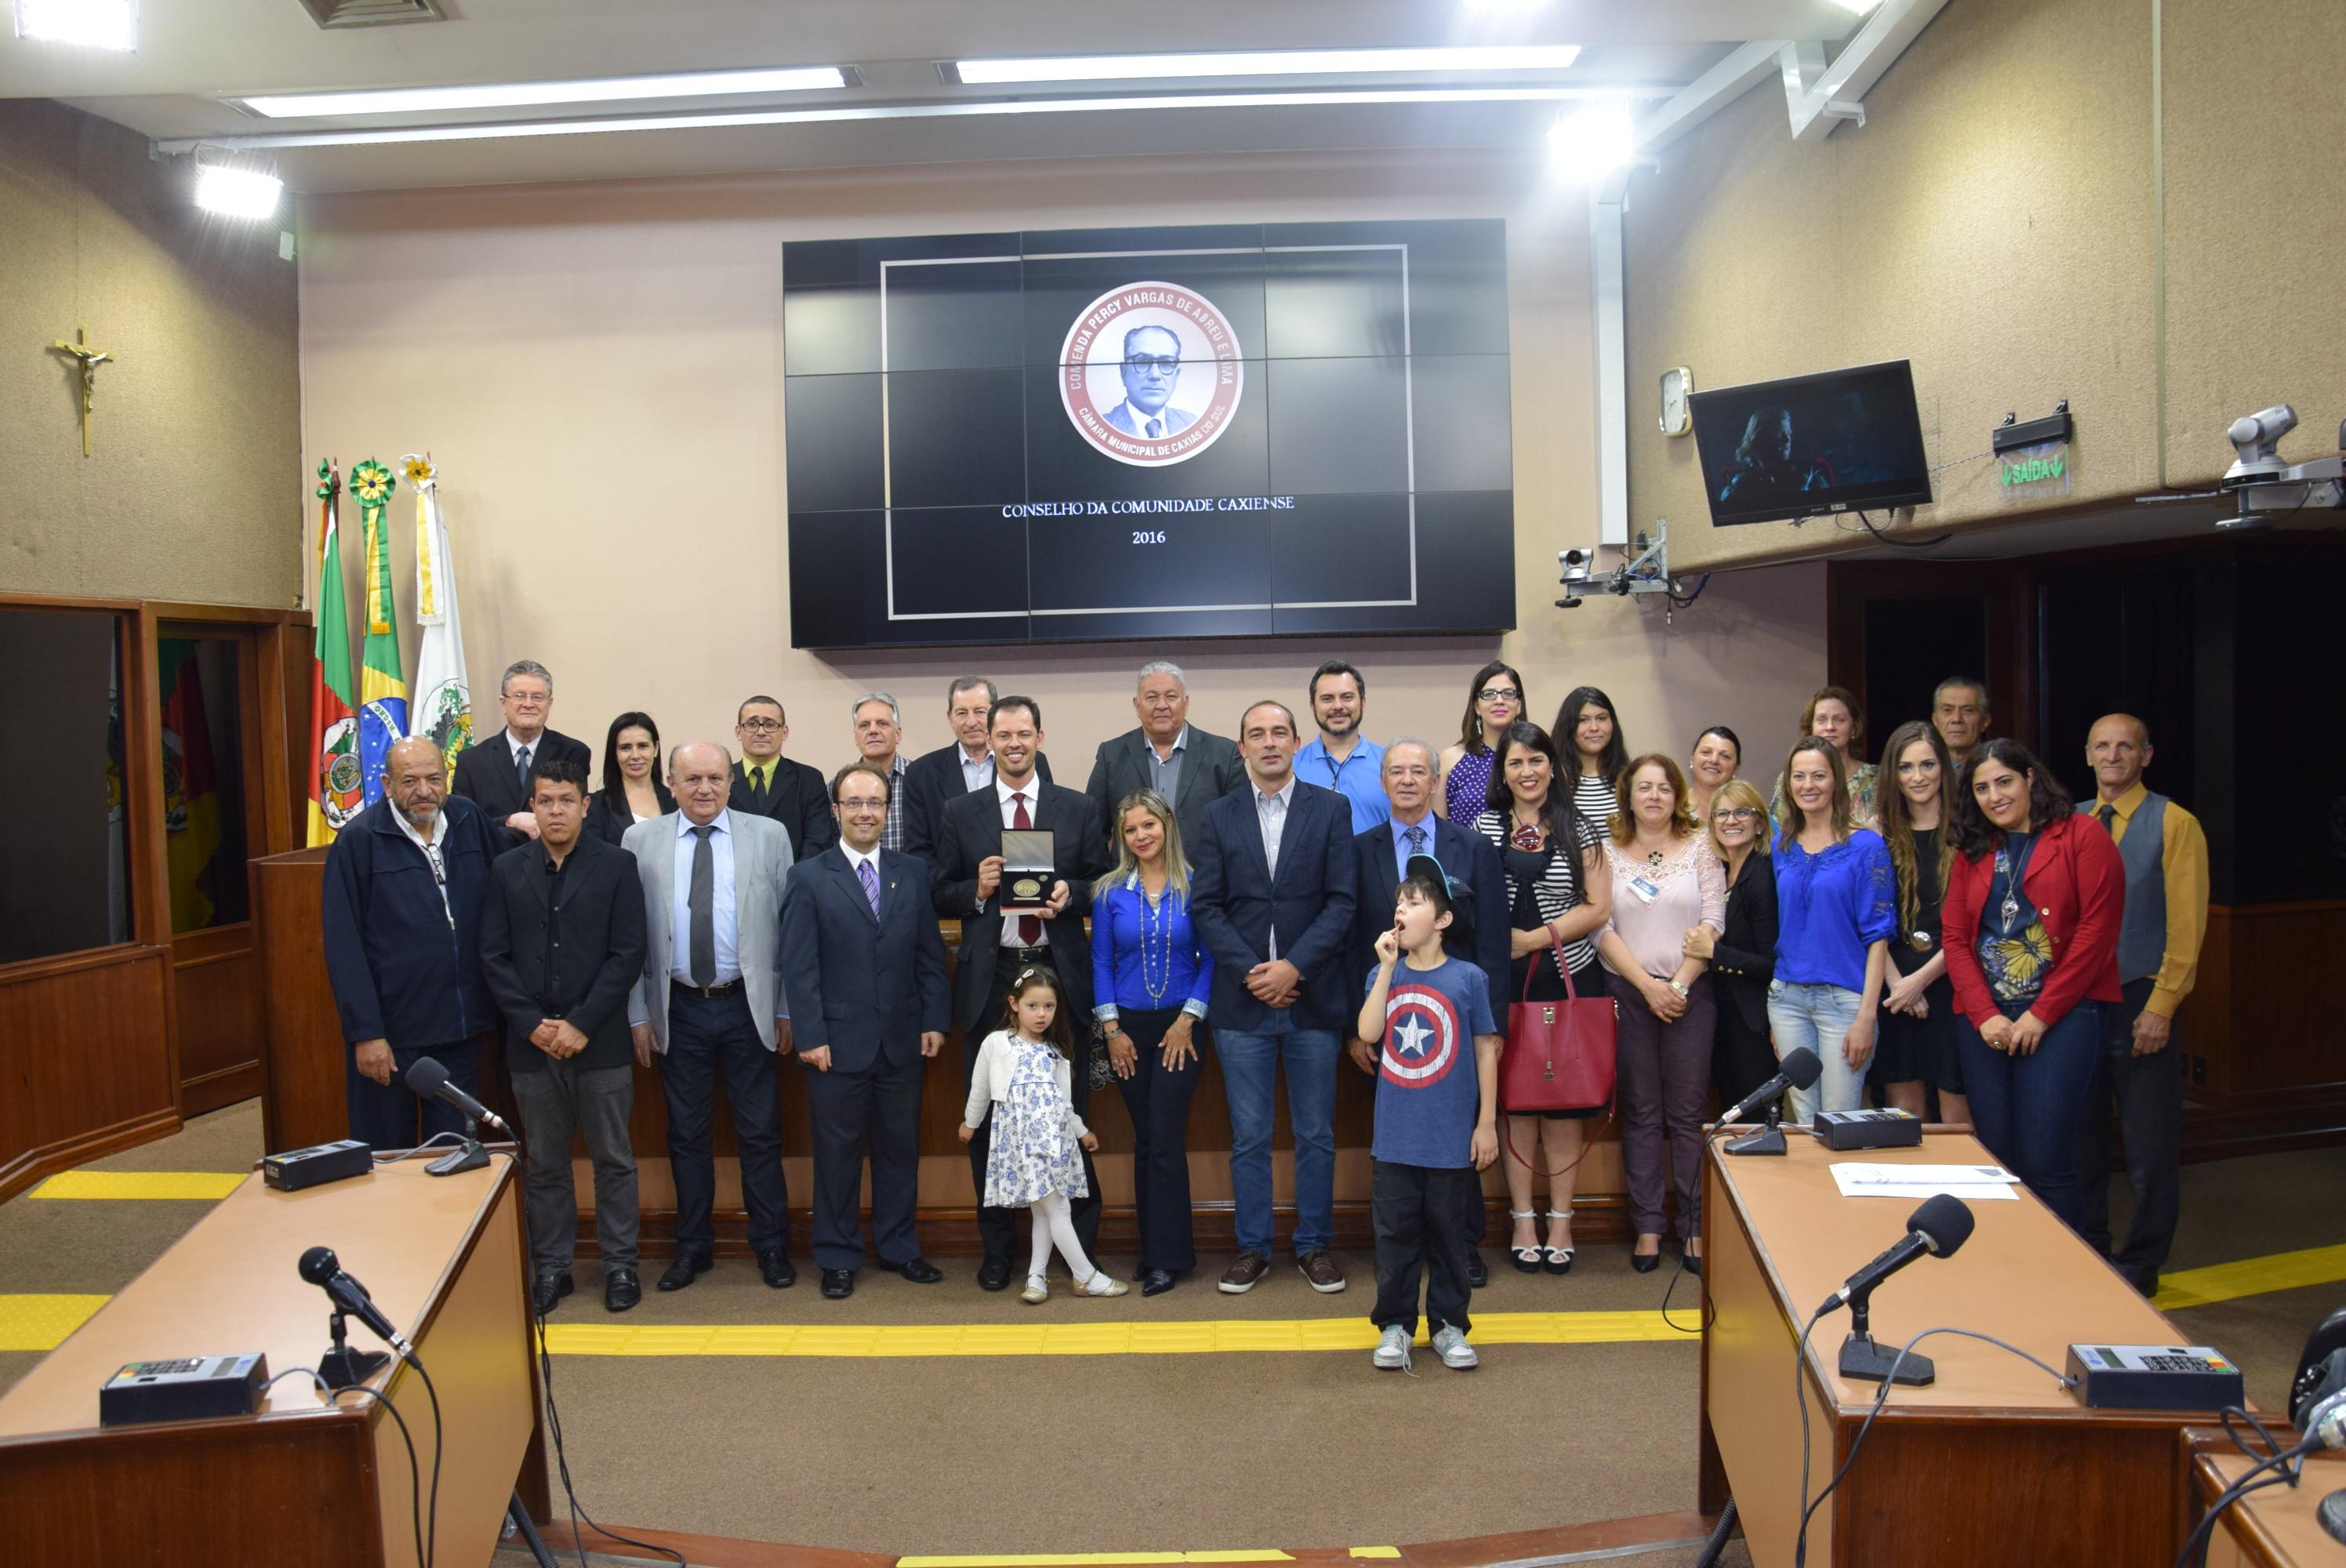 Legislativo concede ao Conselho da Comunidade a comenda Percy Vargas de Abreu e Lima 2016